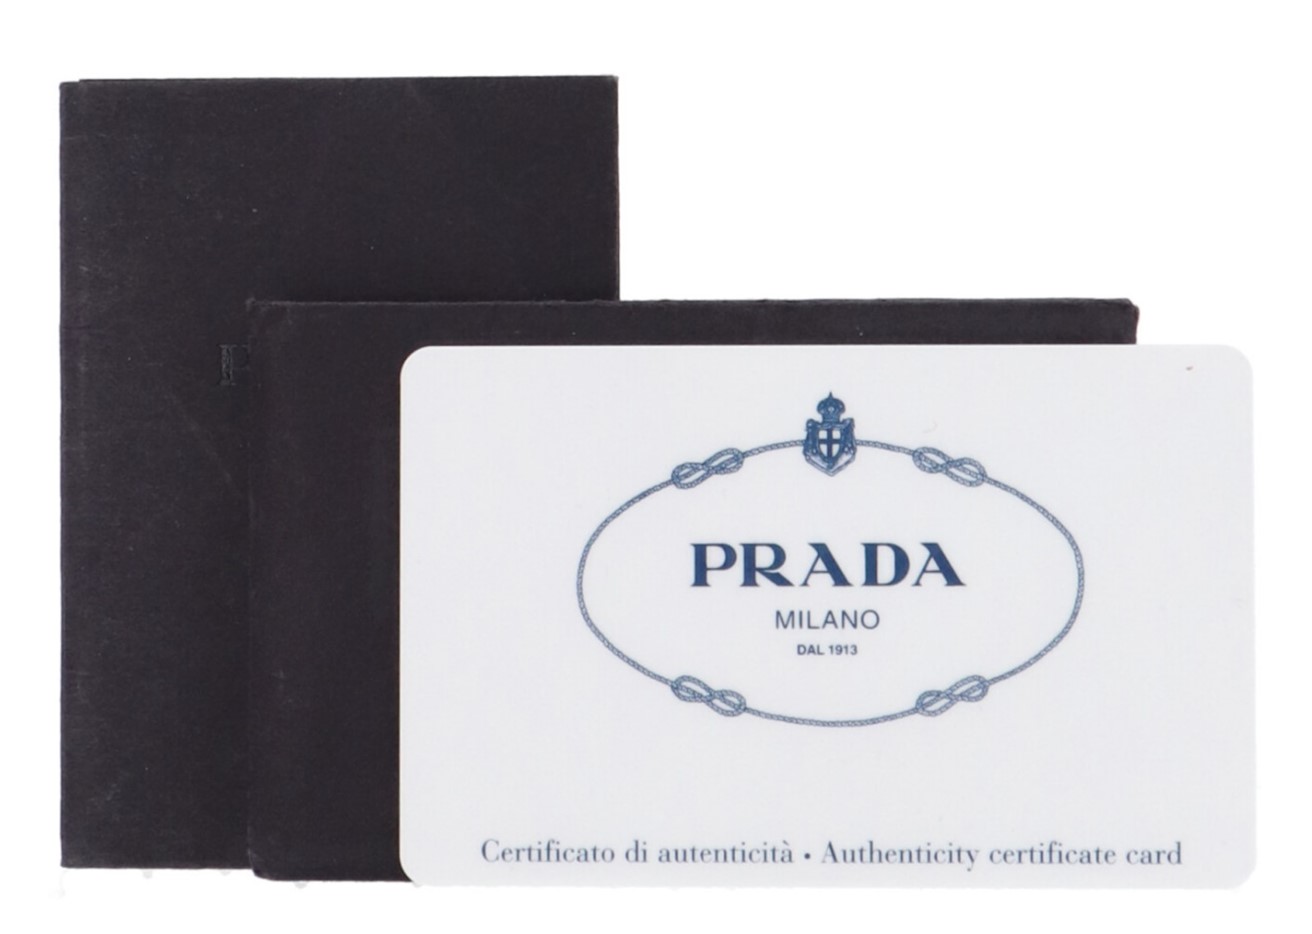 Prada certificate of authenticity